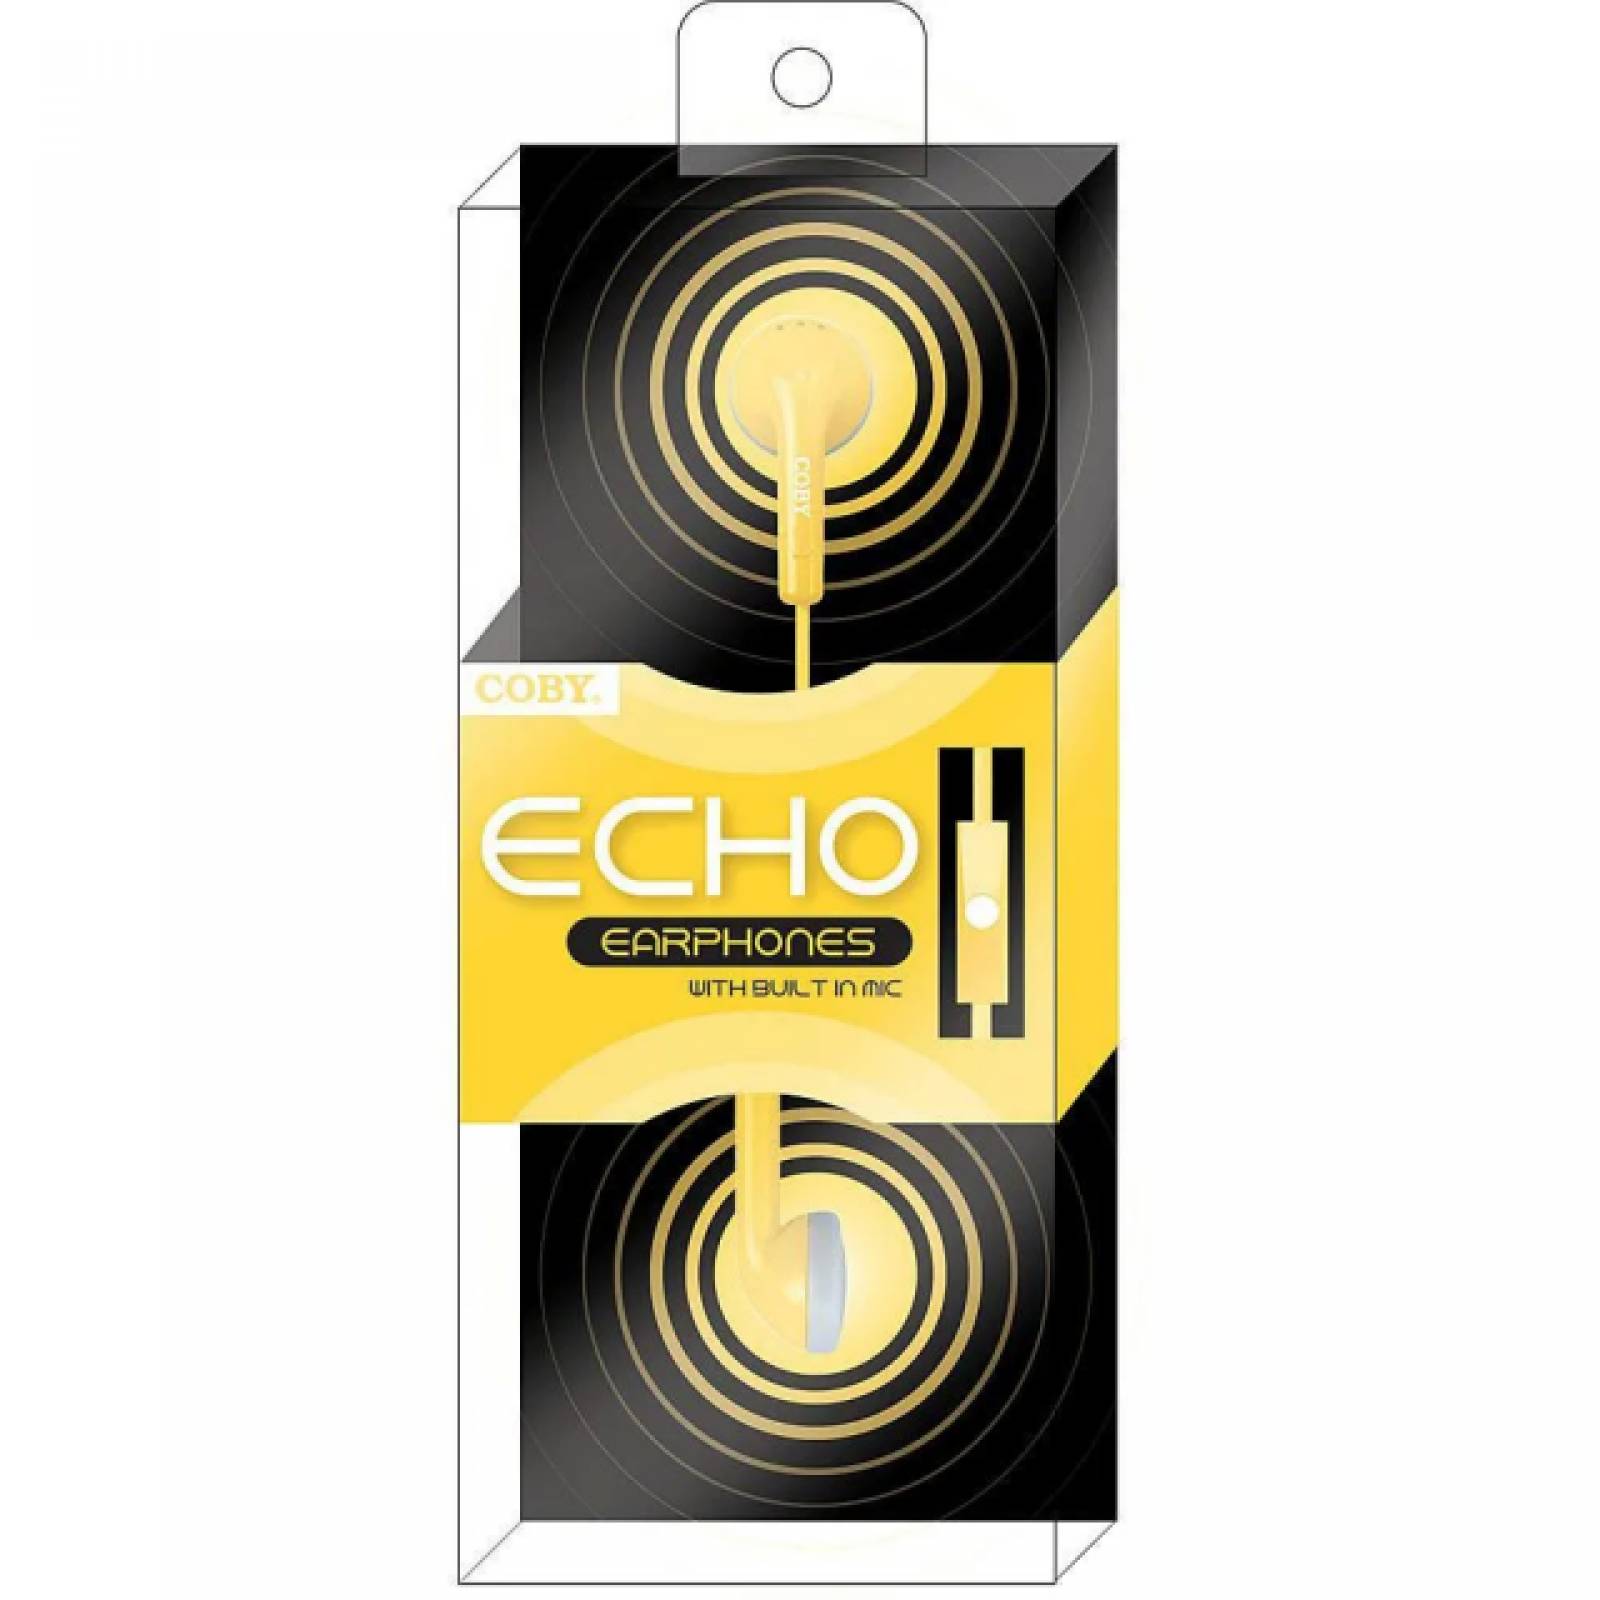 Auriculares Coby Echo con micrófono incorporado Color Amarillo